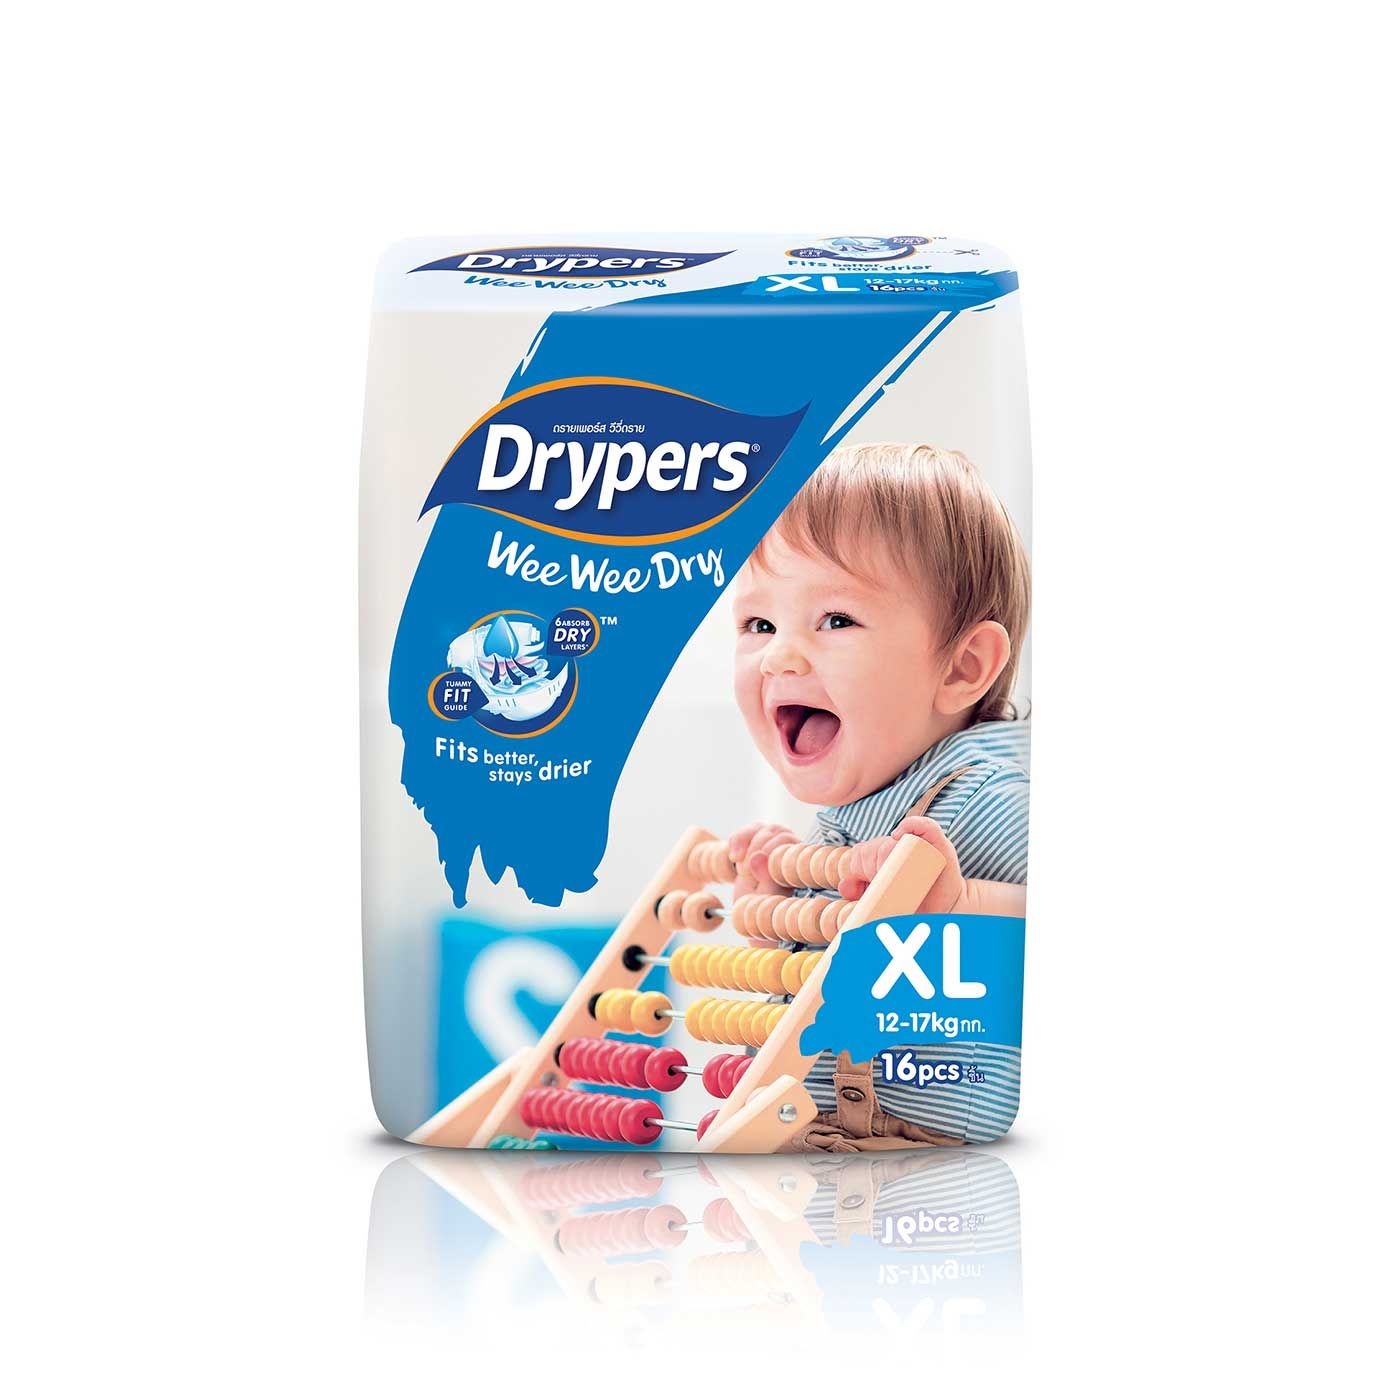 Drypers Wee Wee Dry - XL 16s - 1